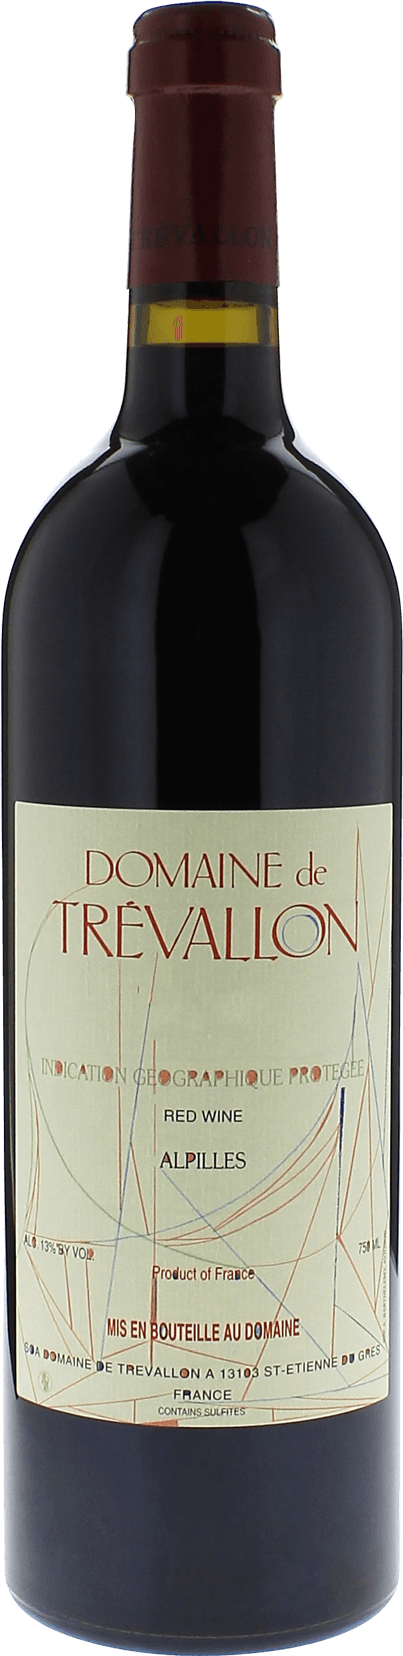 Domaine de trevallon rouge 2011  Vin de Pays, Provence